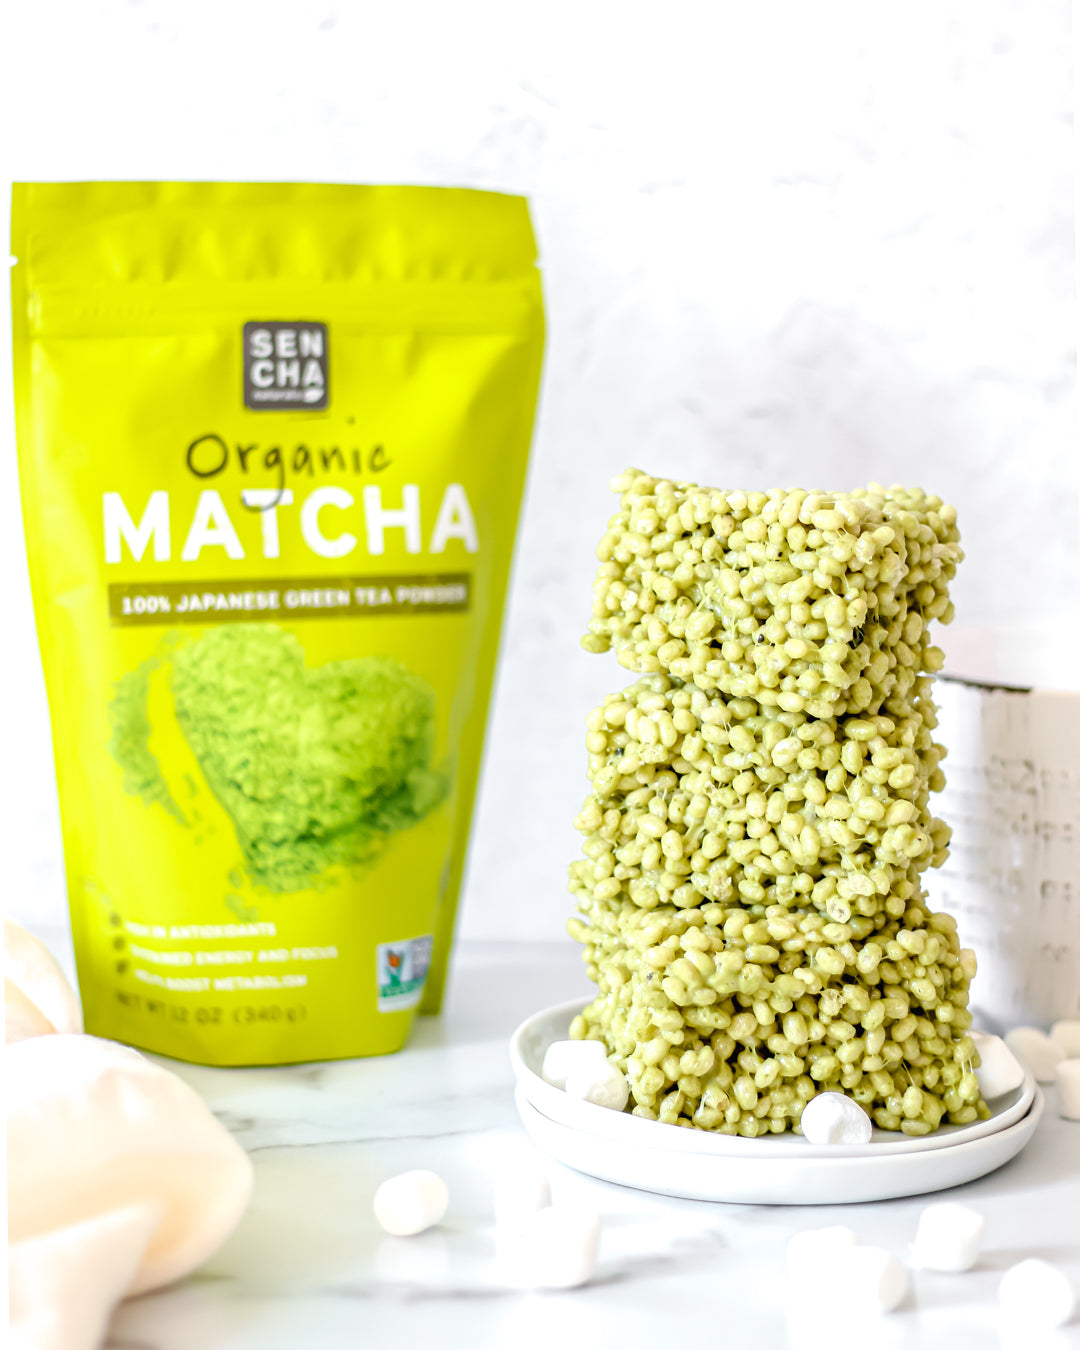 Matcha green tea powder rice krispies treats dessert recipe